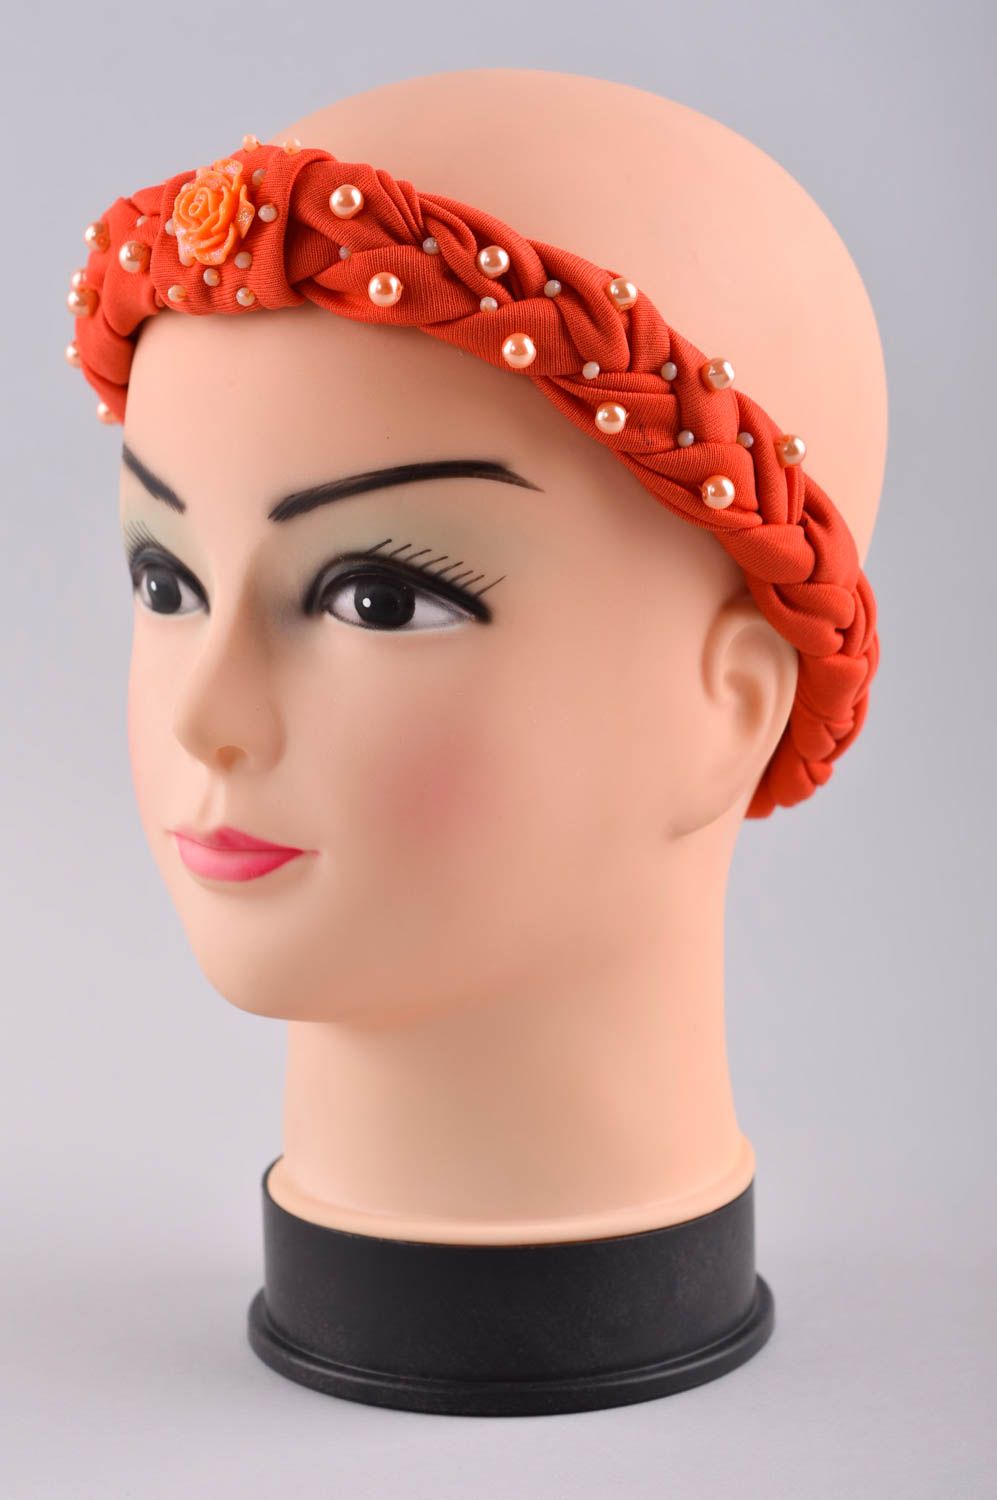 Аксессуар для волос ручной работы женский аксессуар красивая повязка на голову фото 2